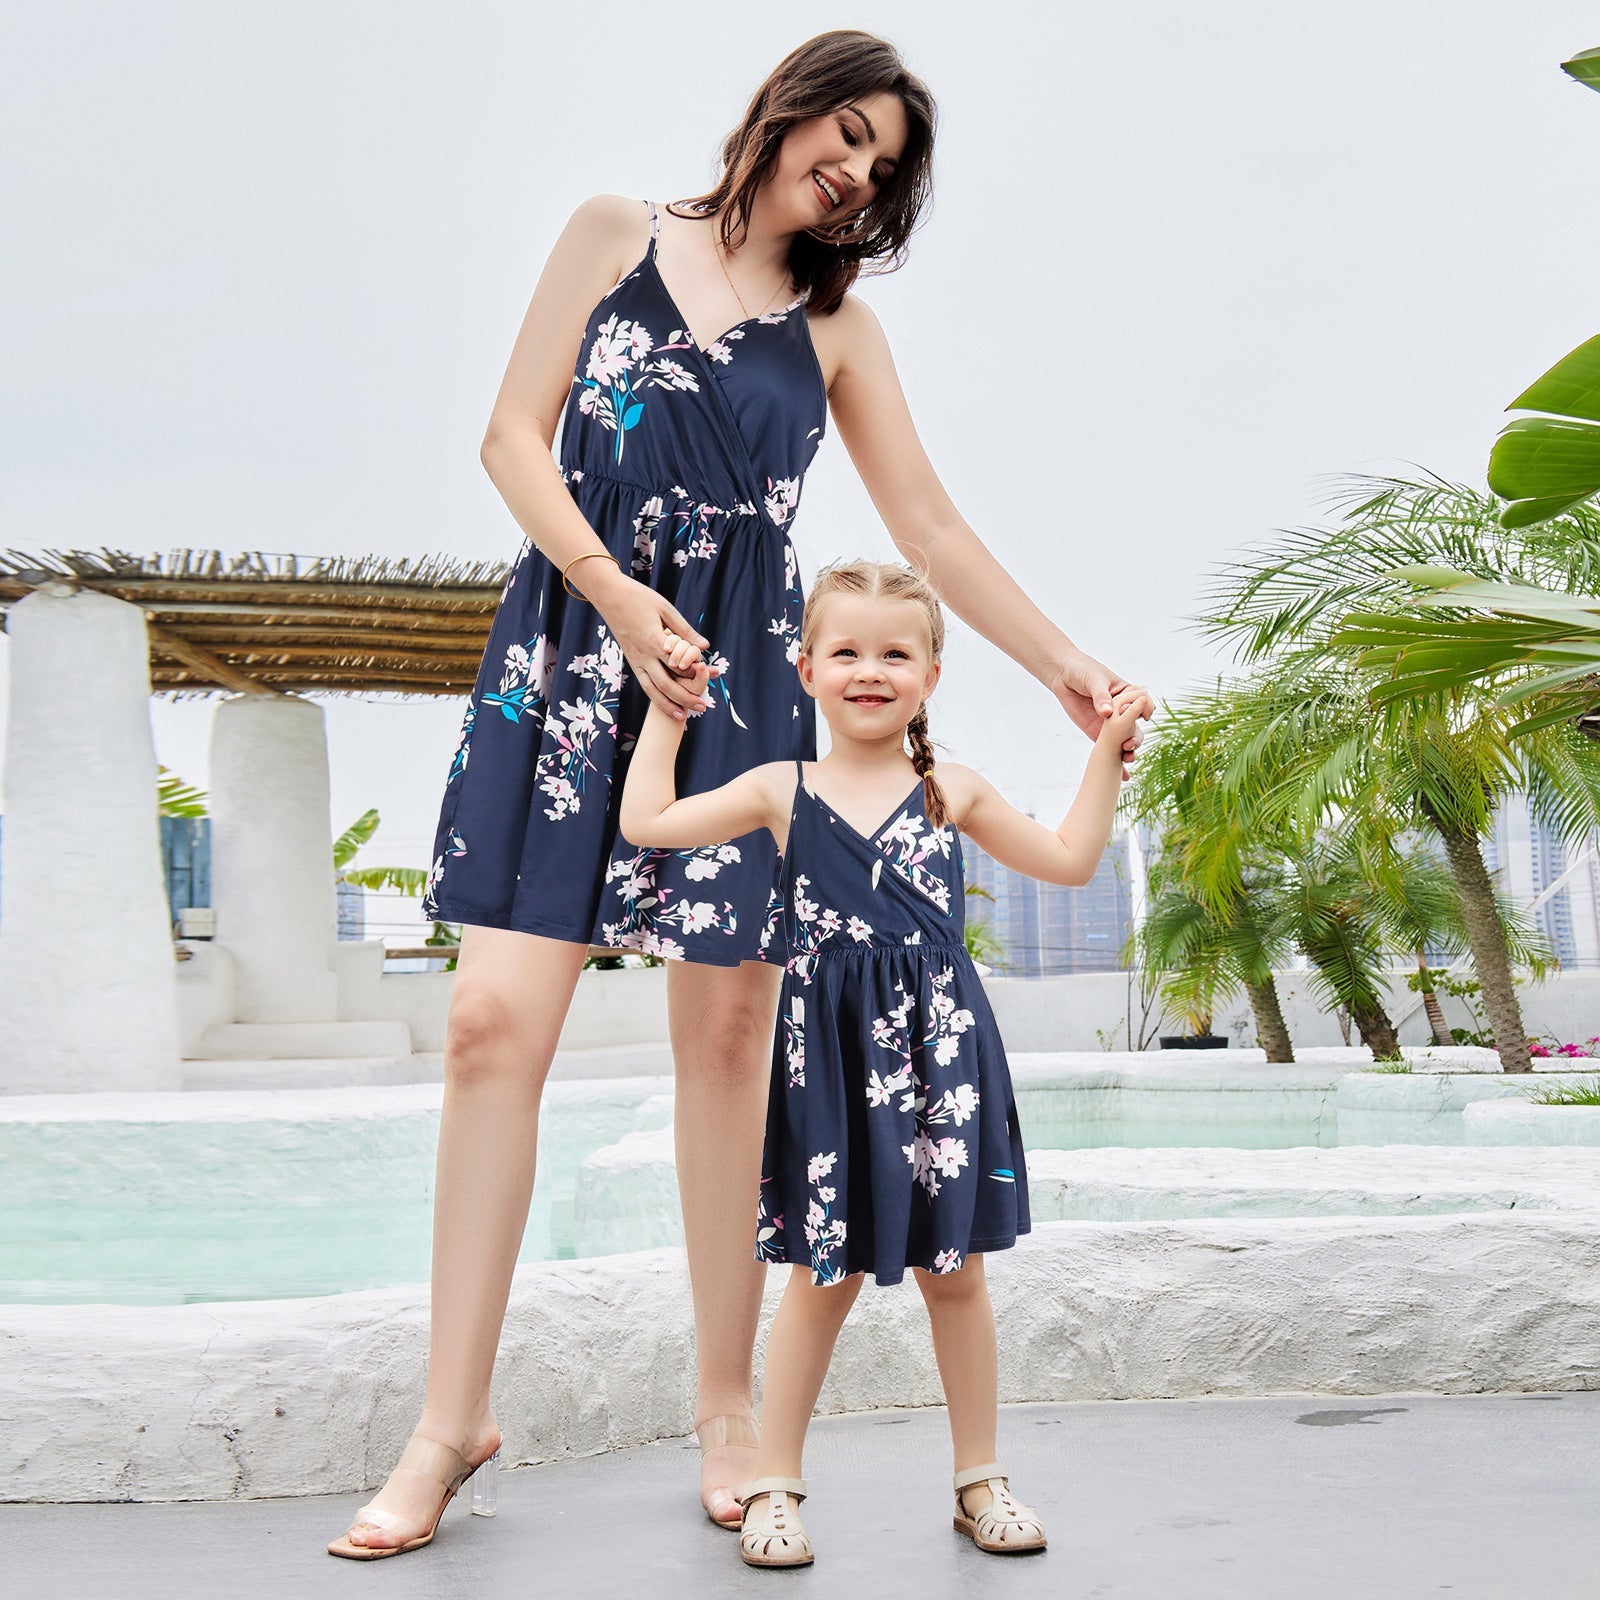 Mommy and Me Matching Dress Summer Casual Sundress Beach Sleeveless Dress